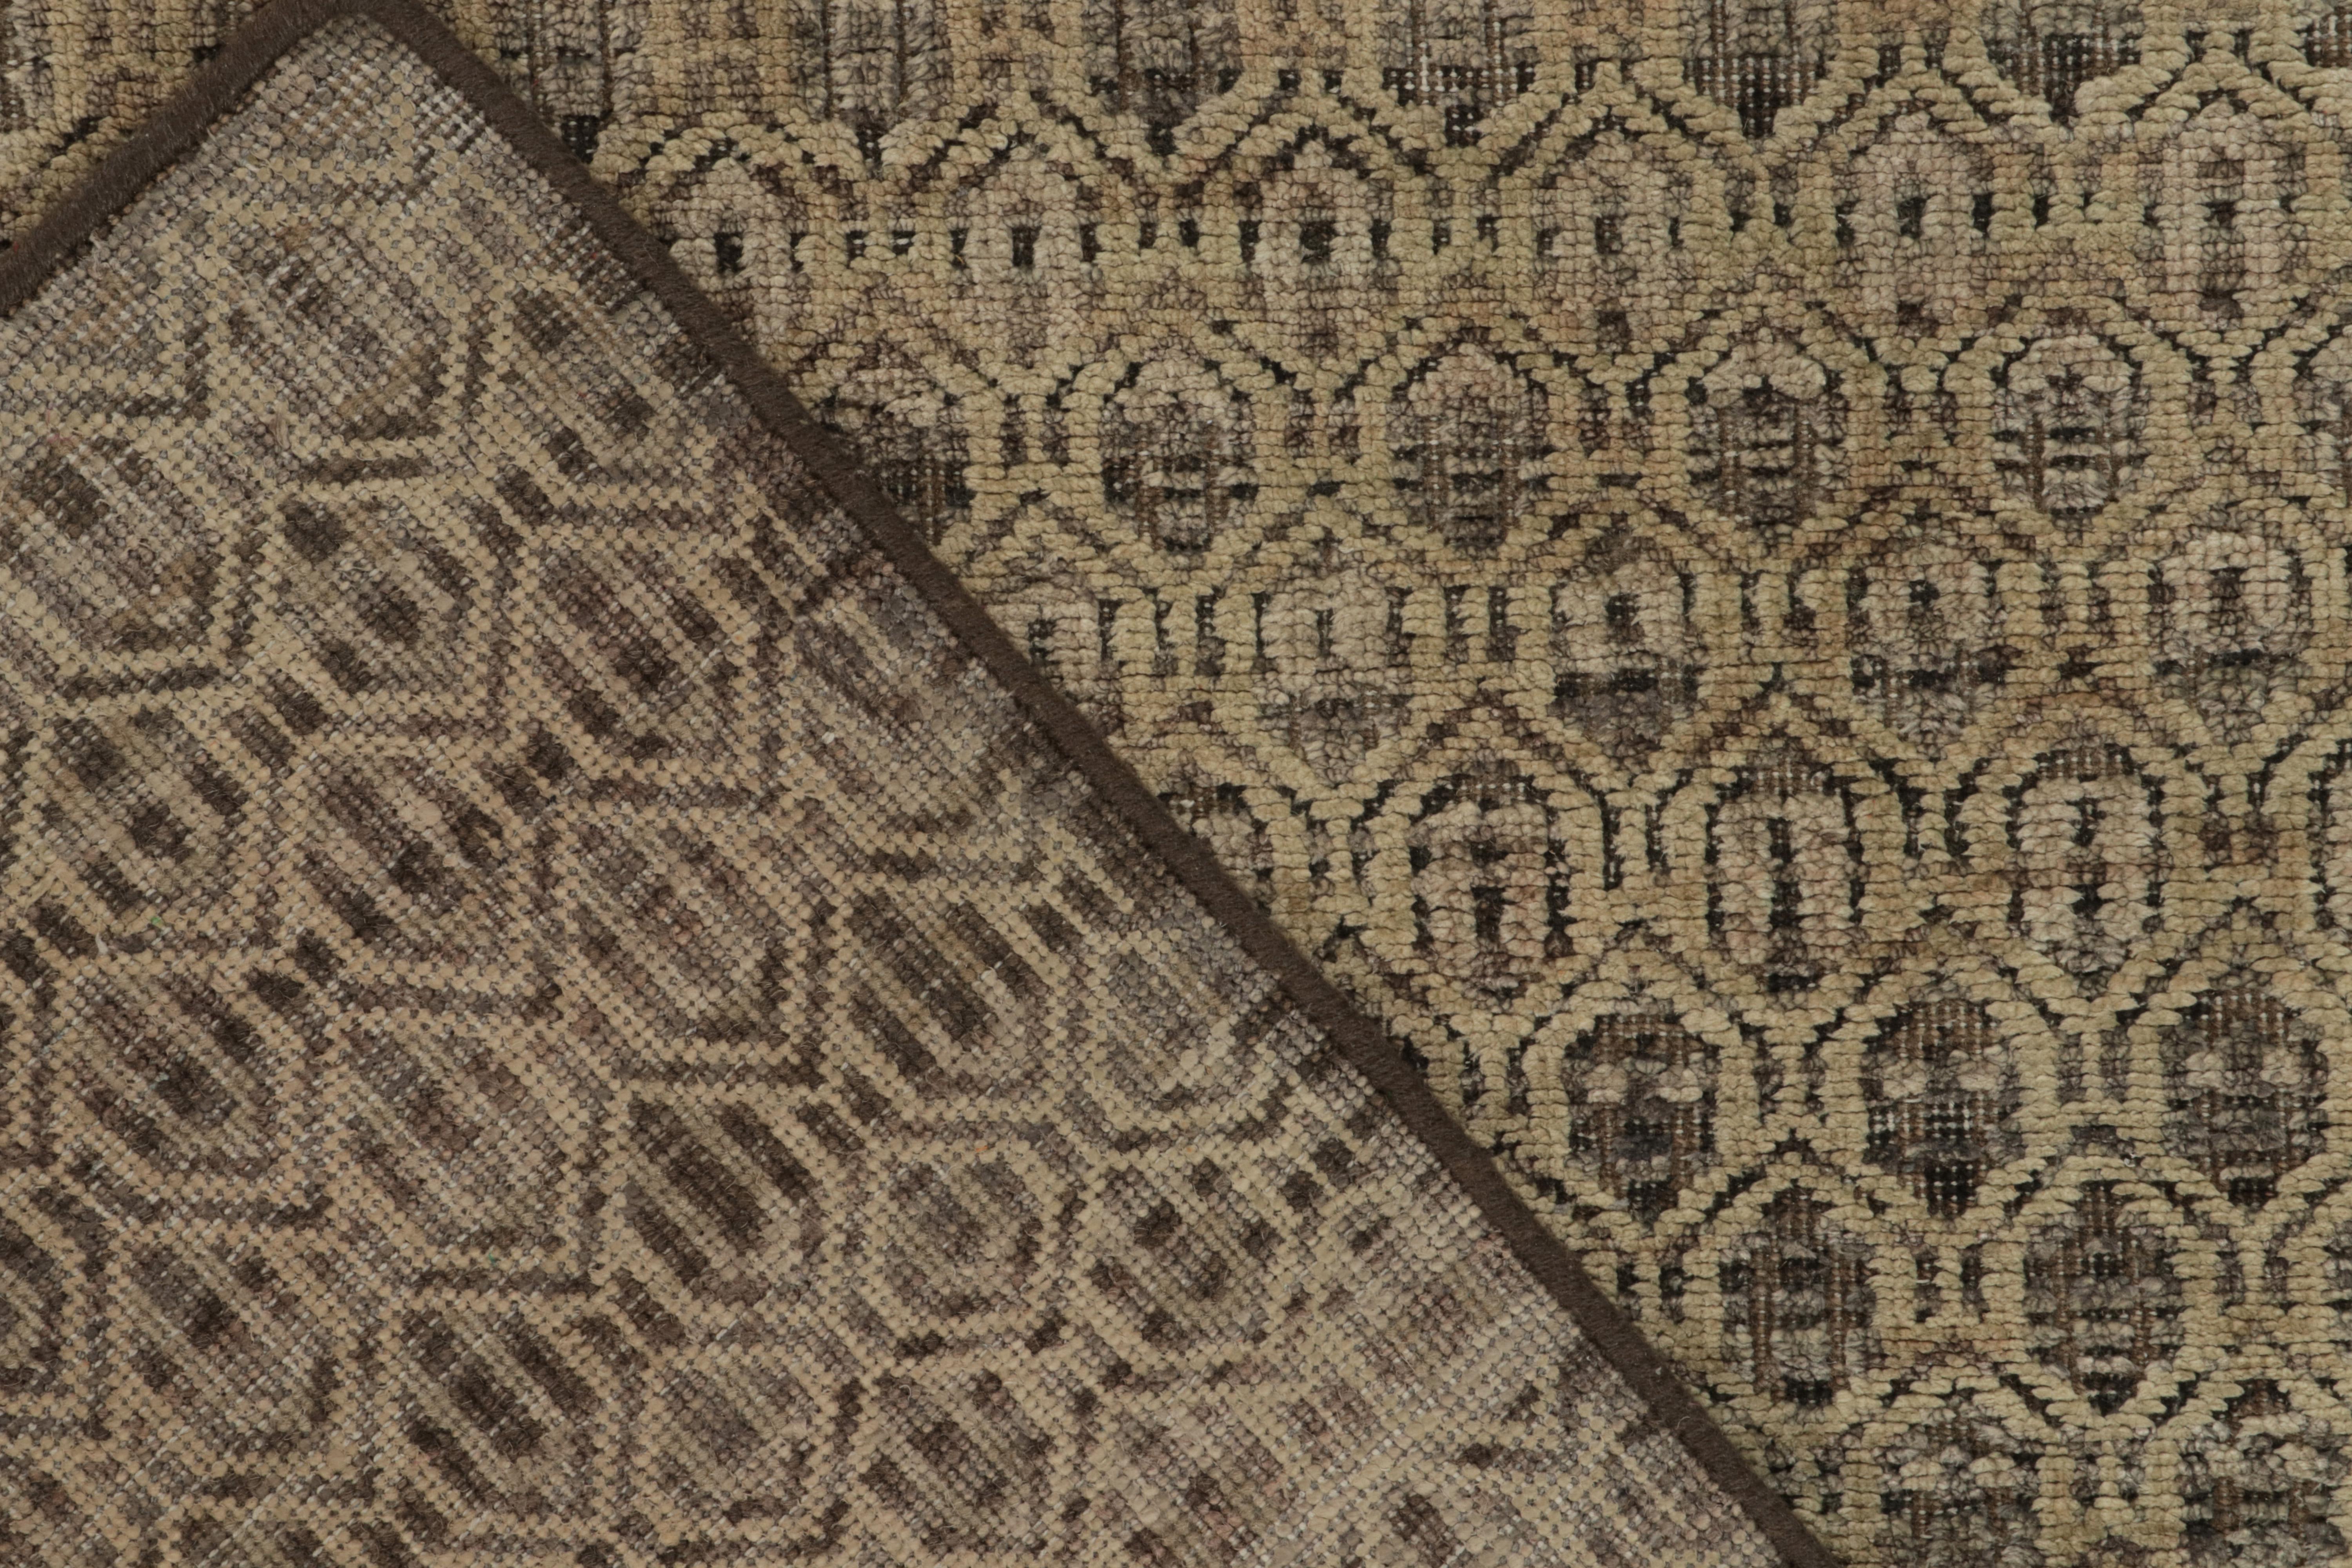 Wool Rug & Kilim’s Modern Textural Runner in Beige-Brown High-Low Geometric Patterns For Sale